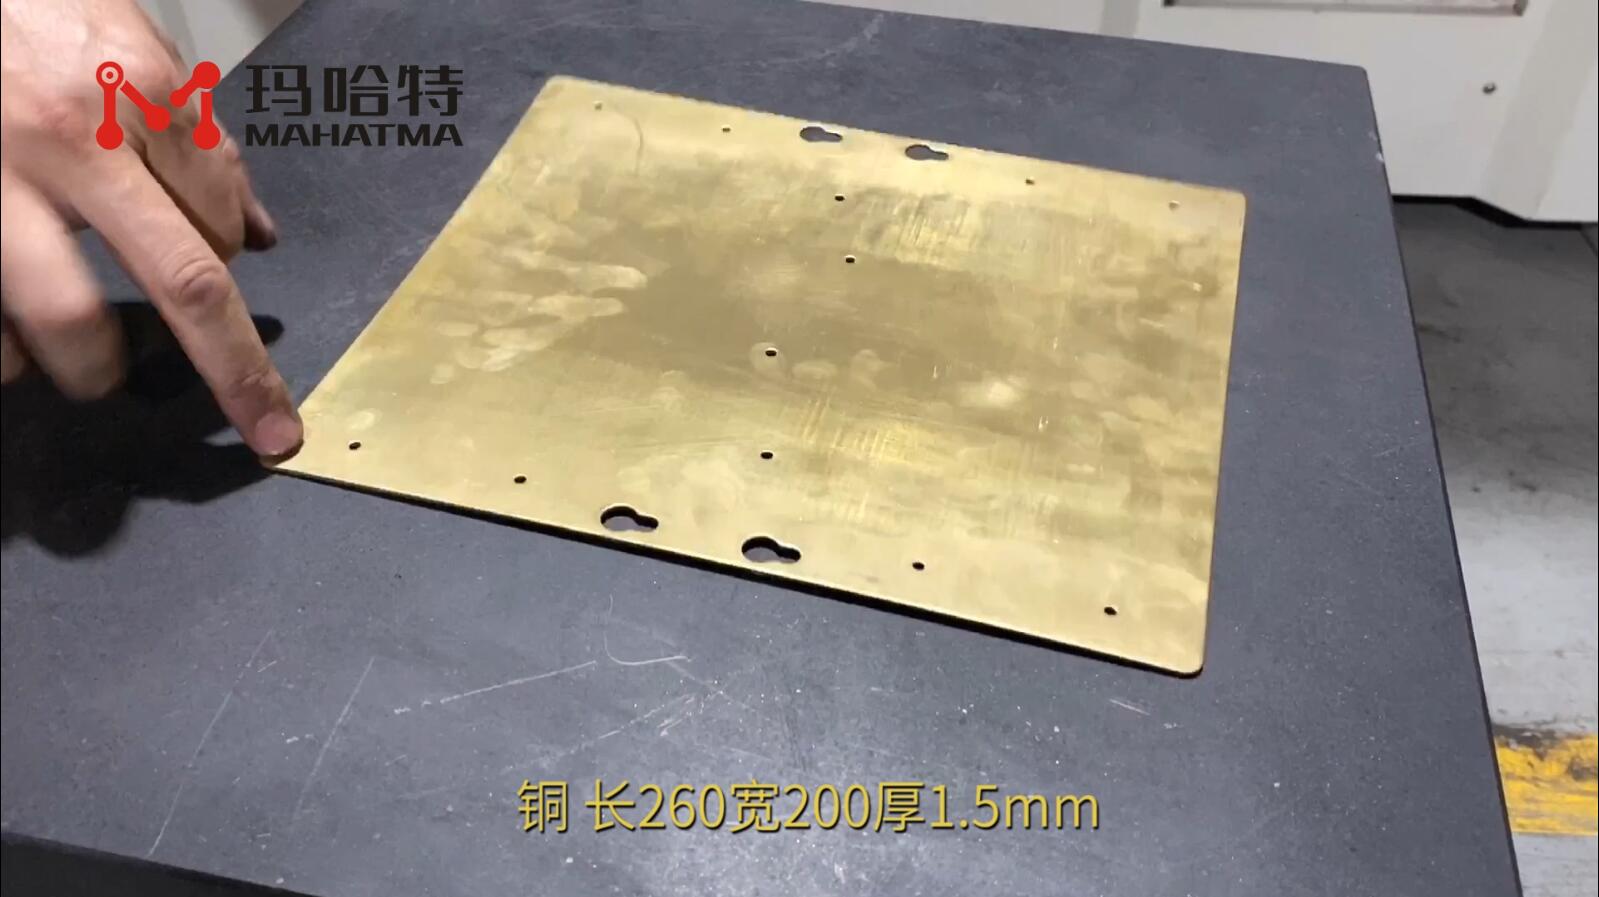 铜 MHT50-1300 长方形 长260宽200厚1.5mm